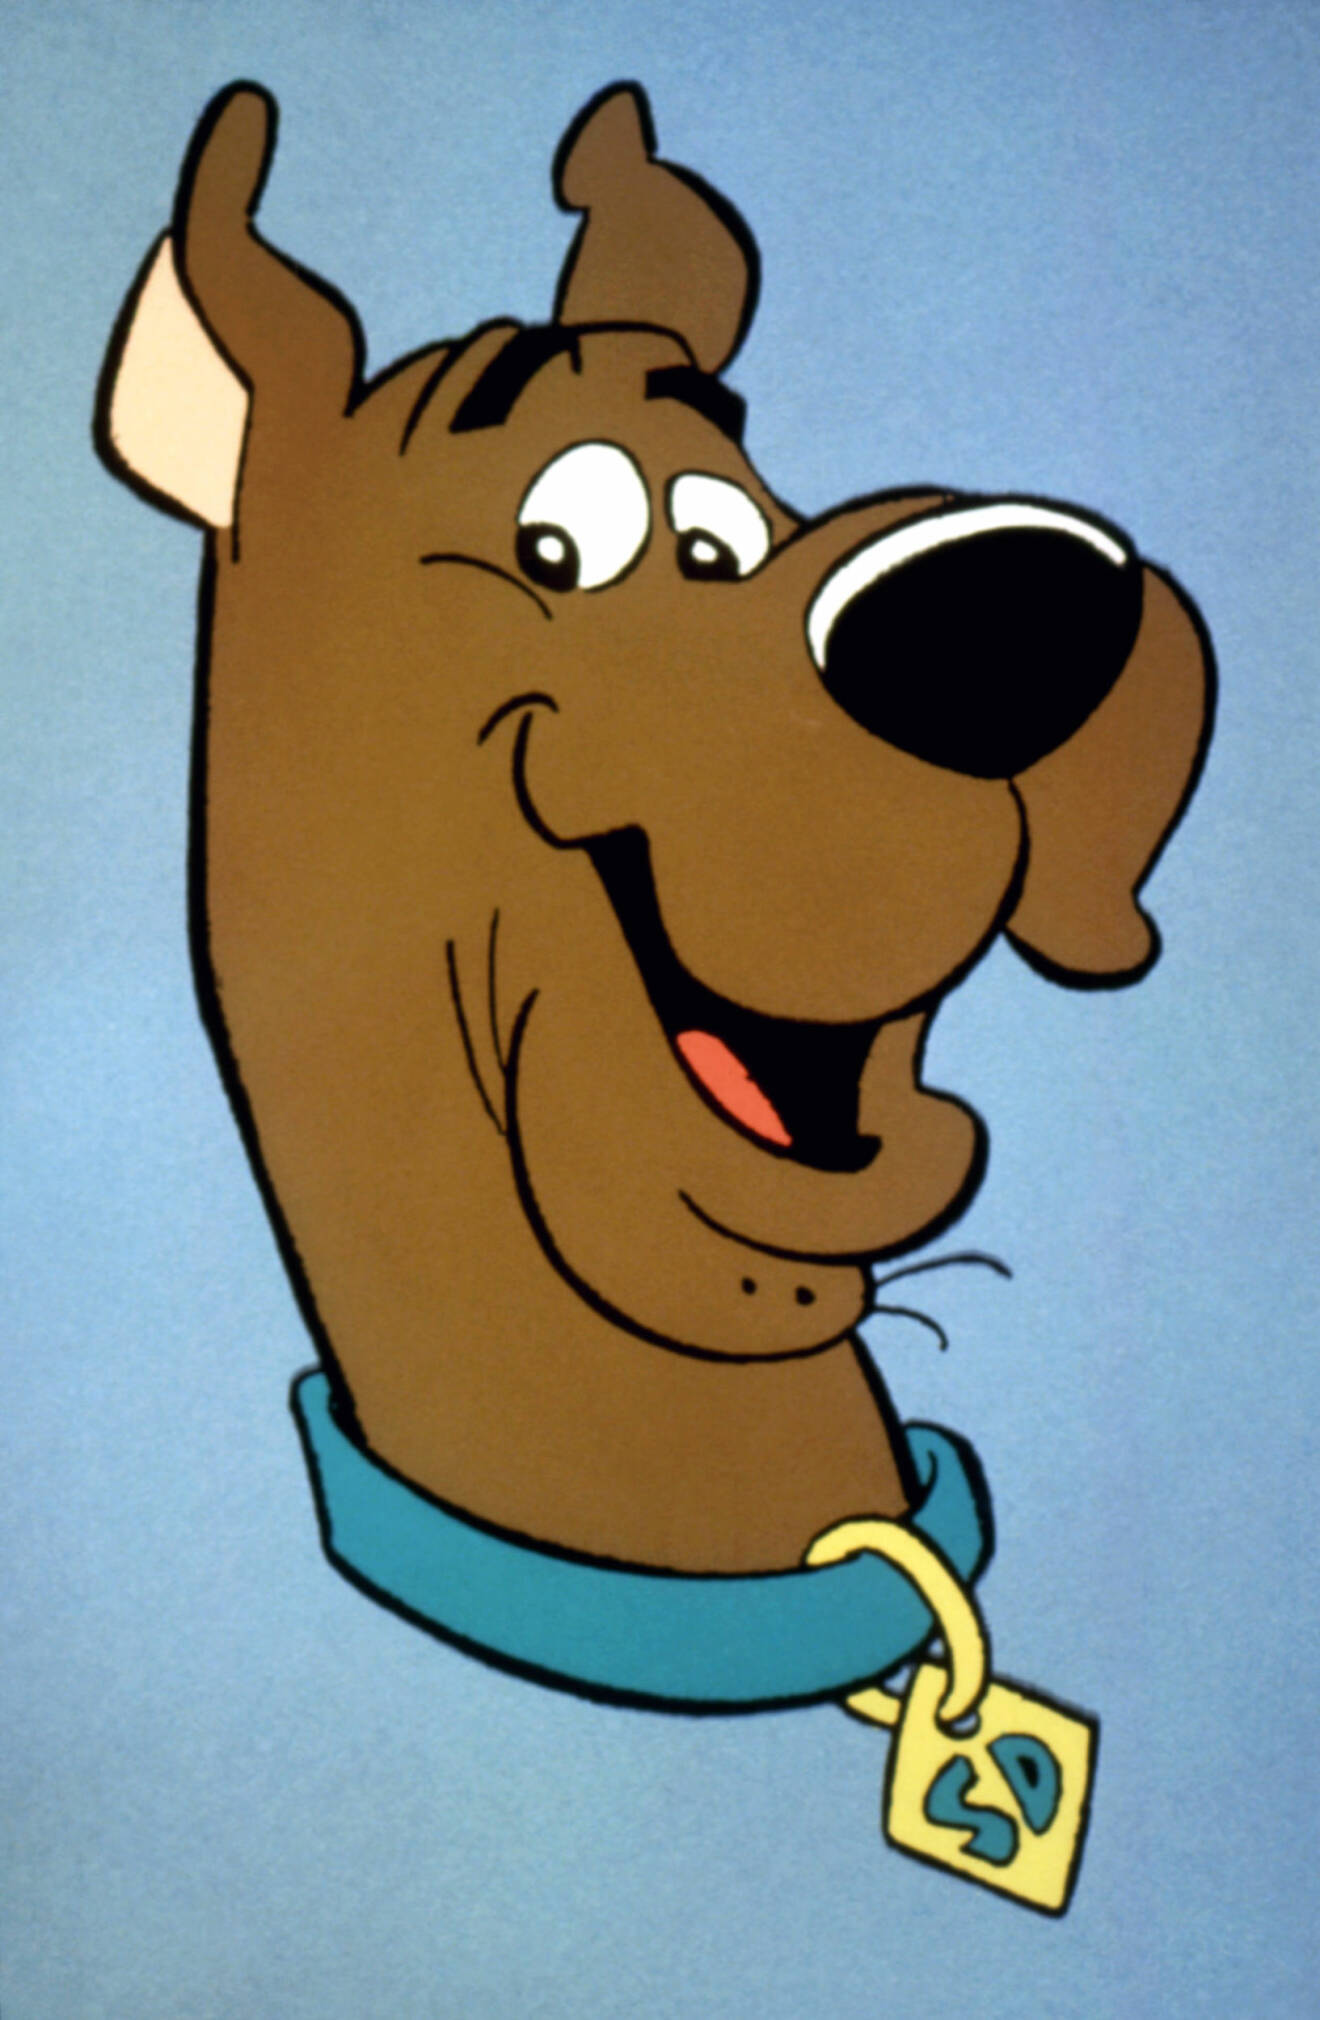 En bild på den tecknade detektiv-hunden Scooby Doo som är namne med verklighetens motsvarighet.